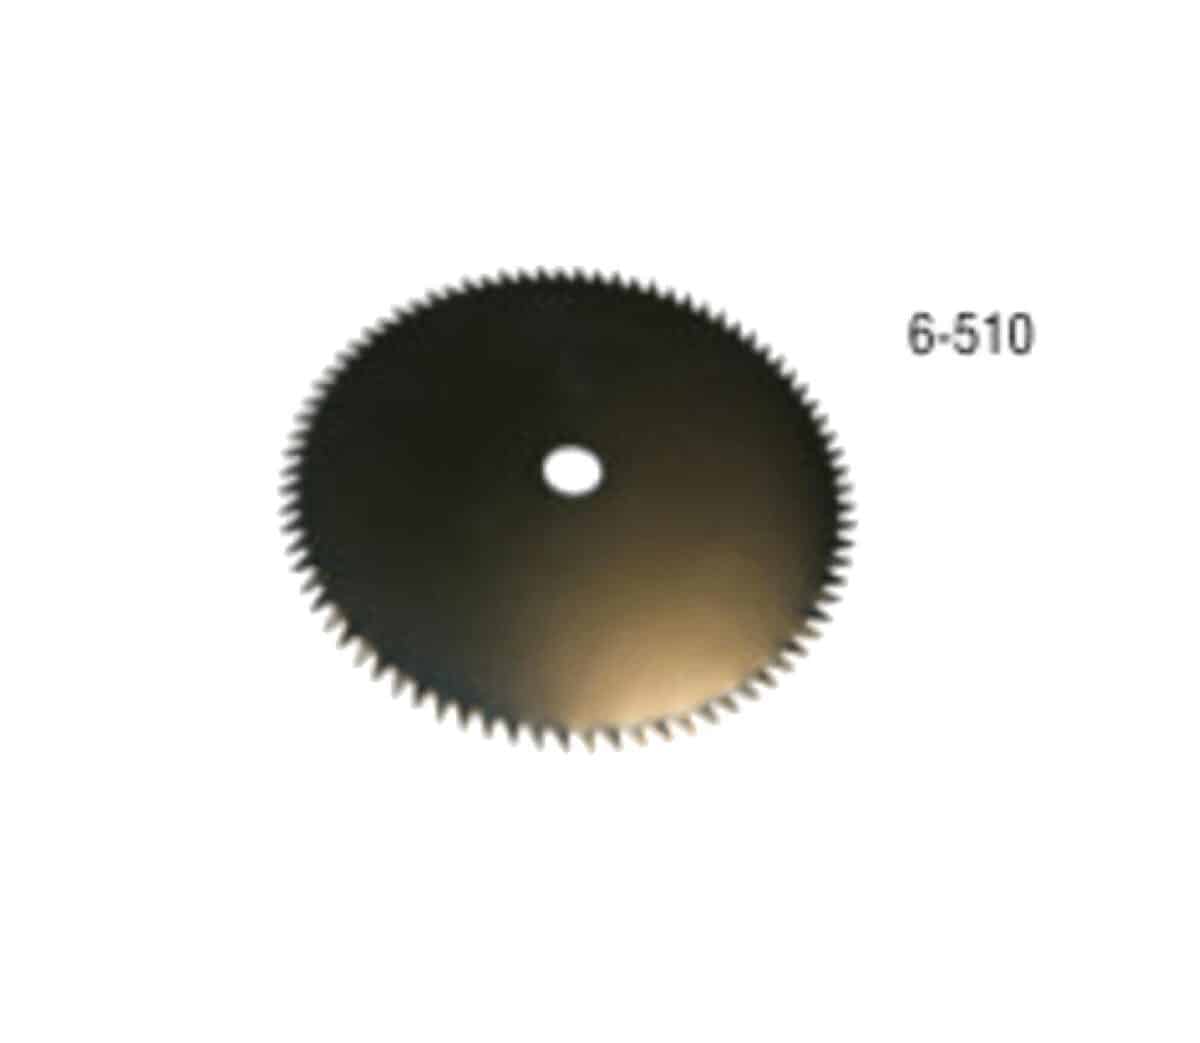 Μεταλλικός Δίσκος Με 80 Δόντια Φ25 6-510-e-geoprostasia.gr